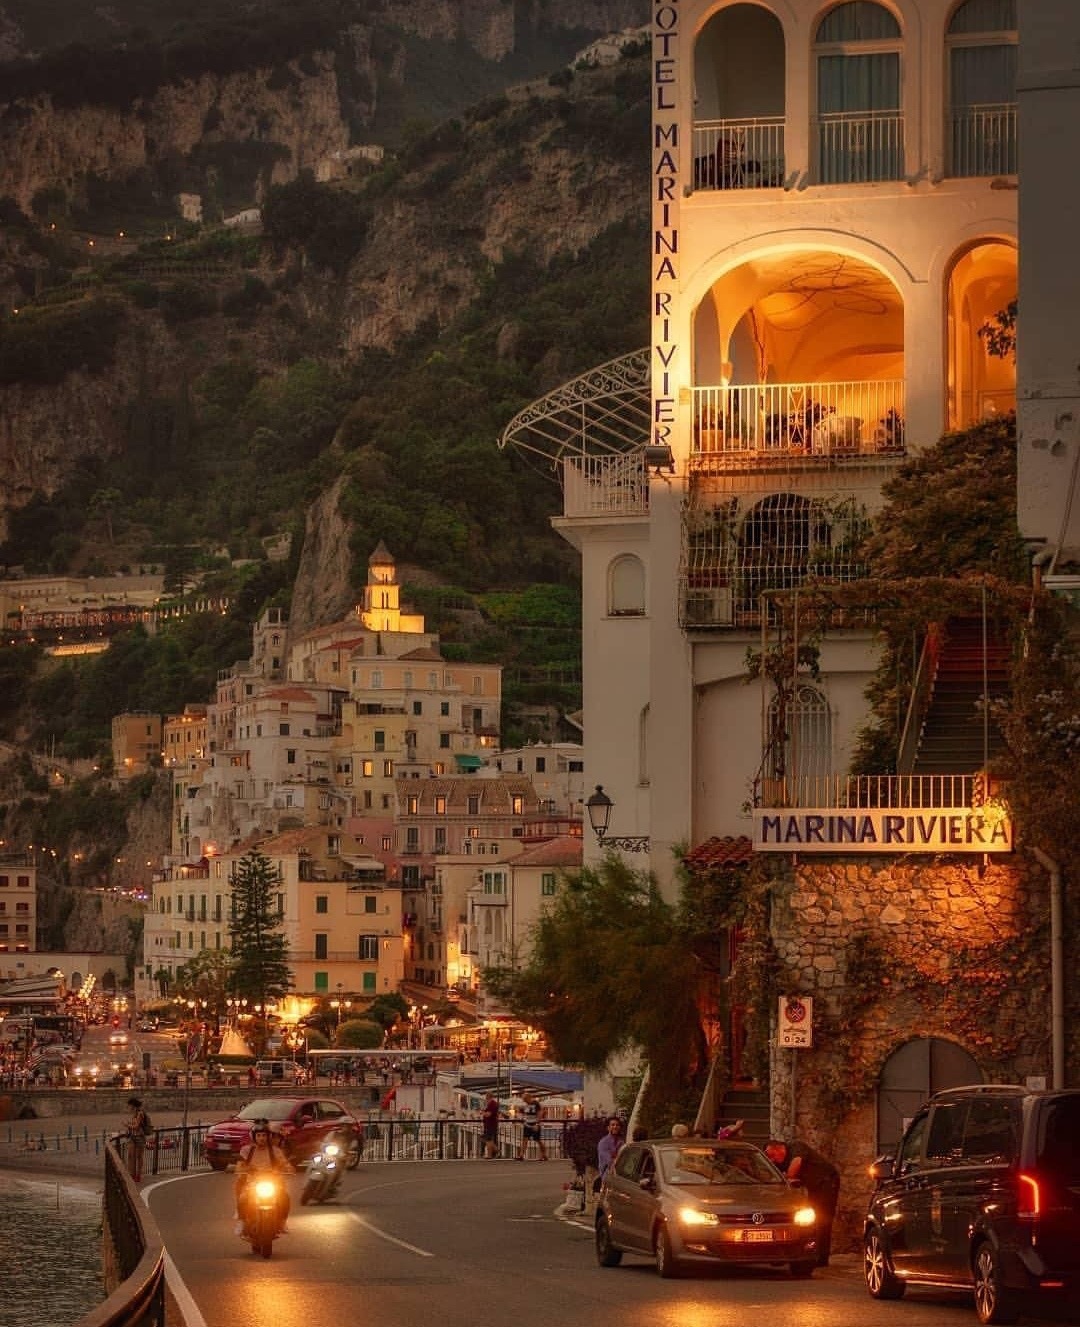 Porn pareisakti: elif-qhr:  Amalfi, Italy By Gennaro photos